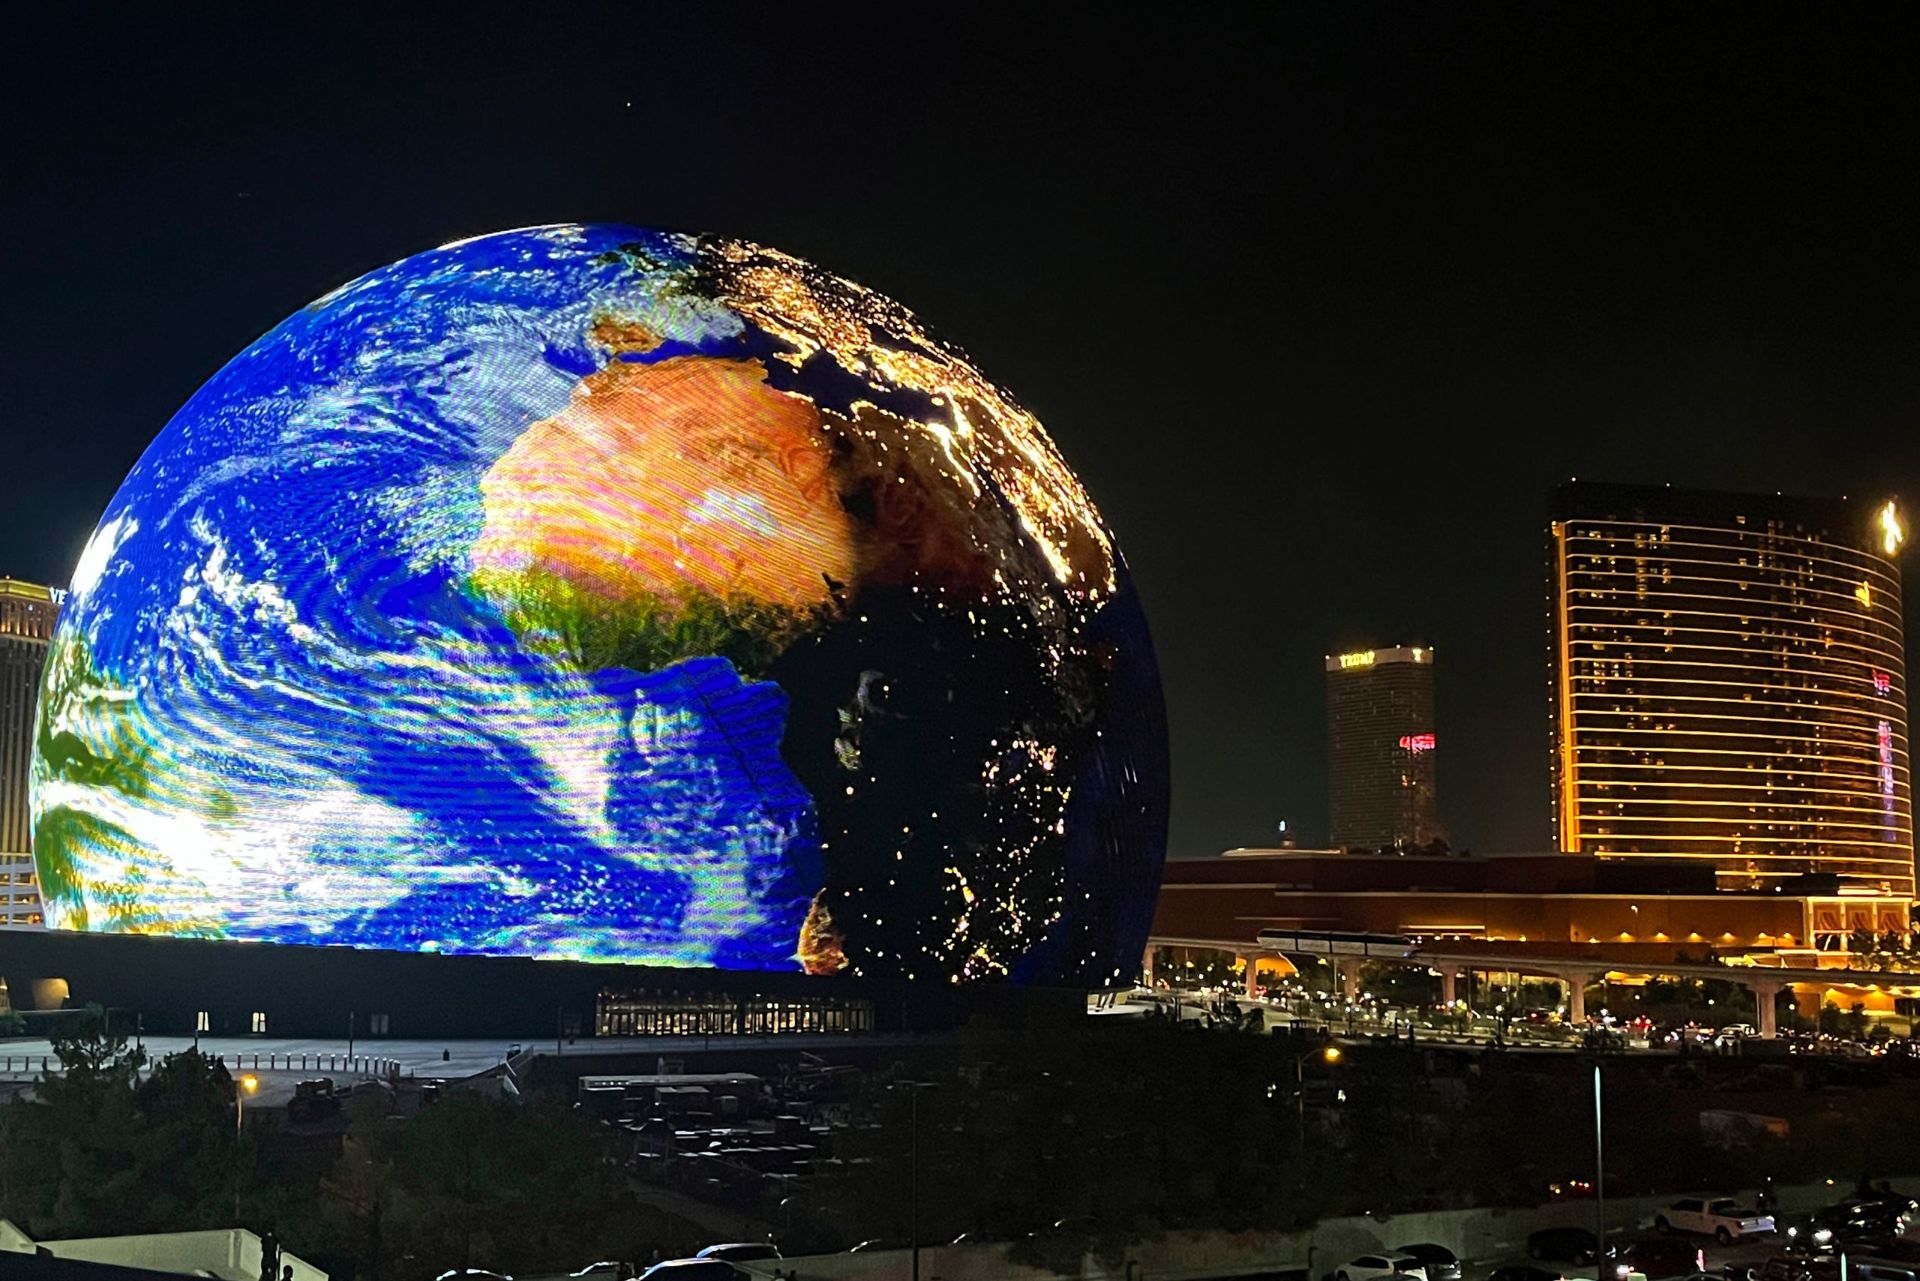 نمایش کره زمین در Sphere لاس وگاس